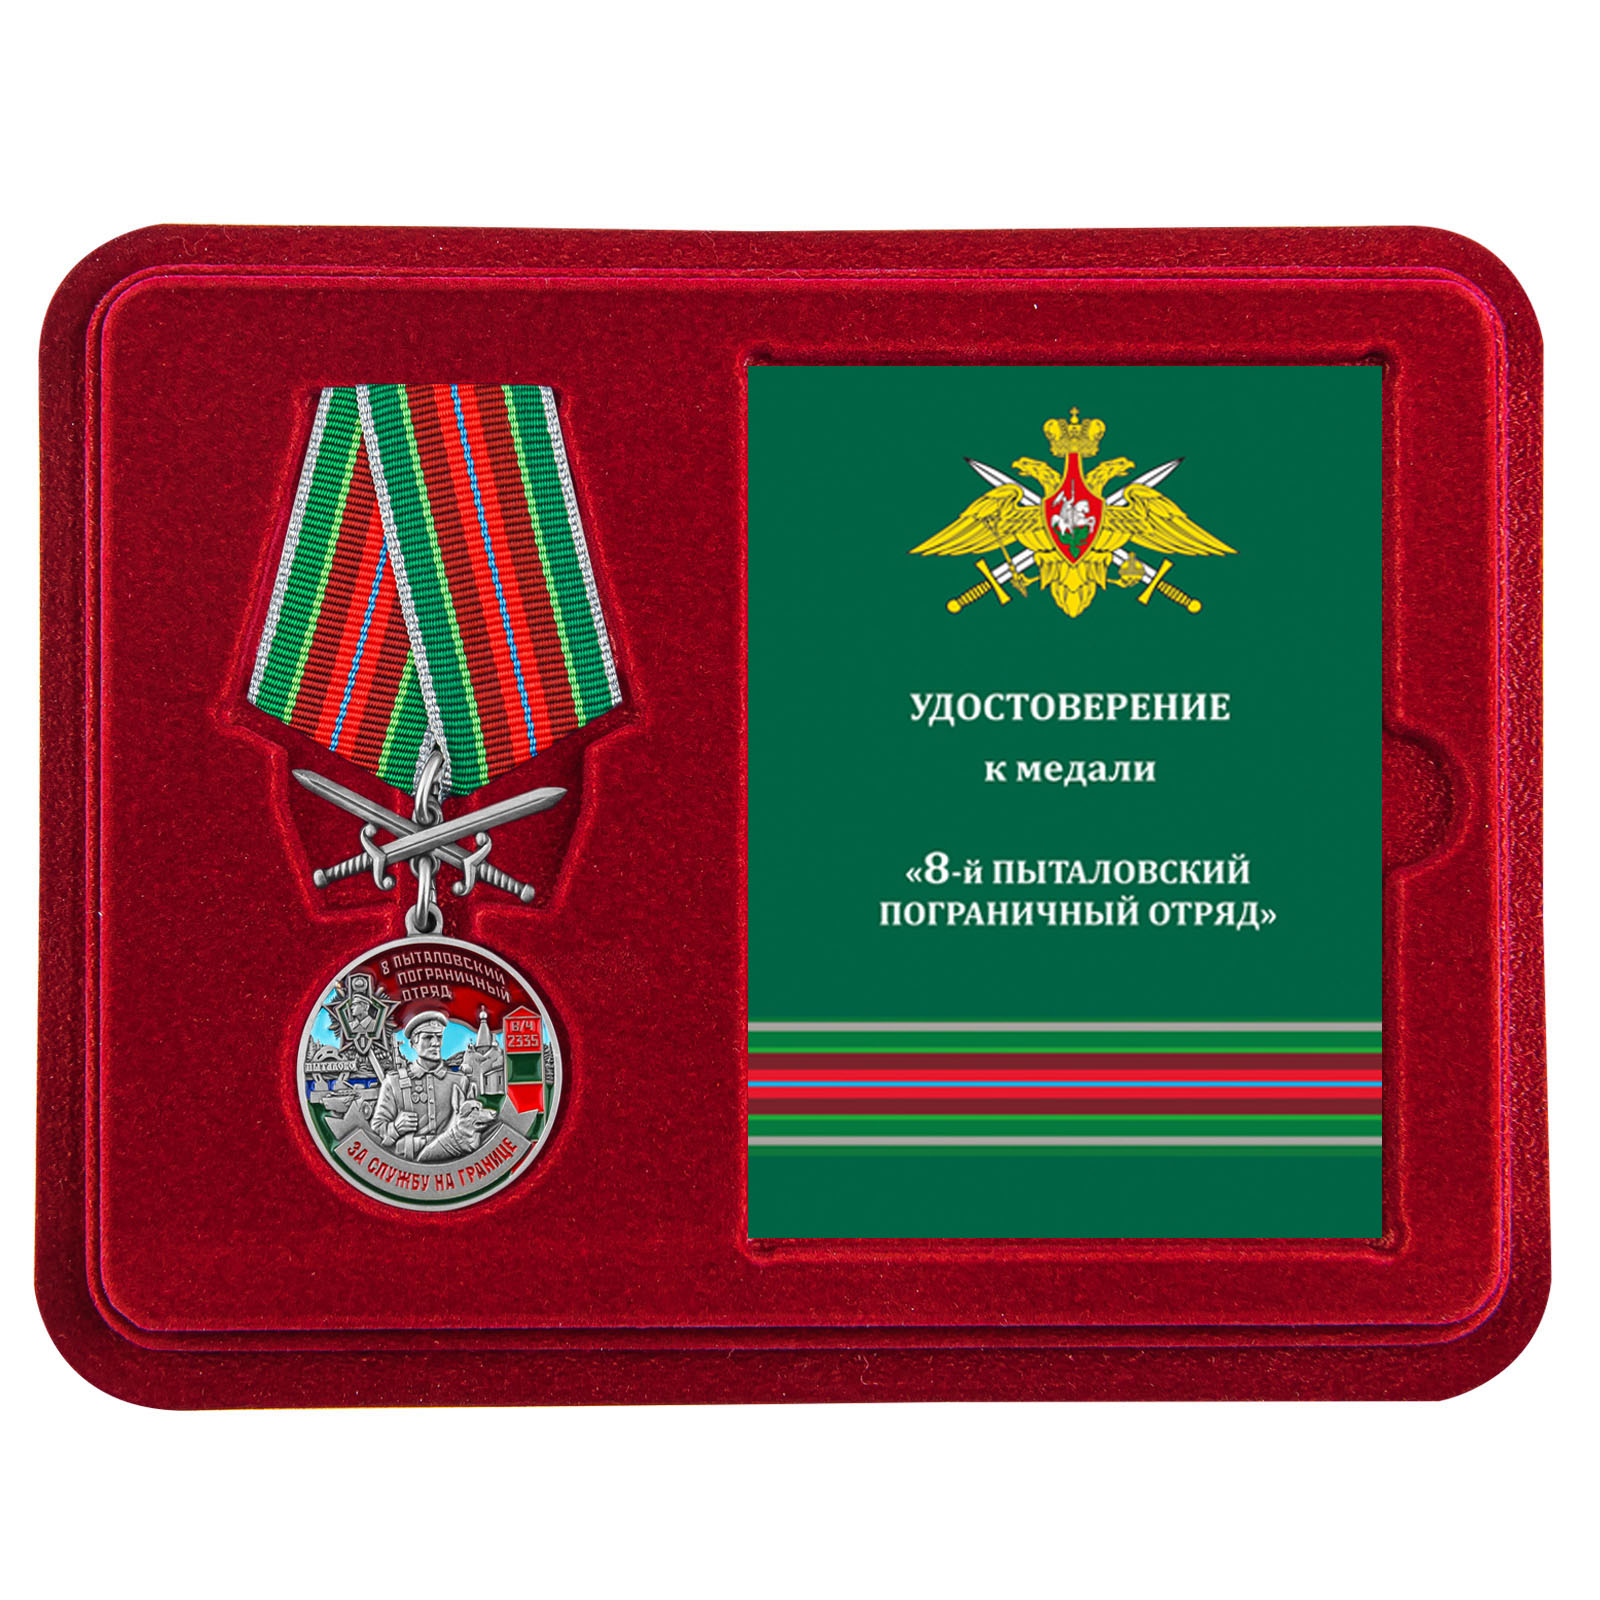 Купить медаль За службу в Пыталовском пограничном отряде с доставкой